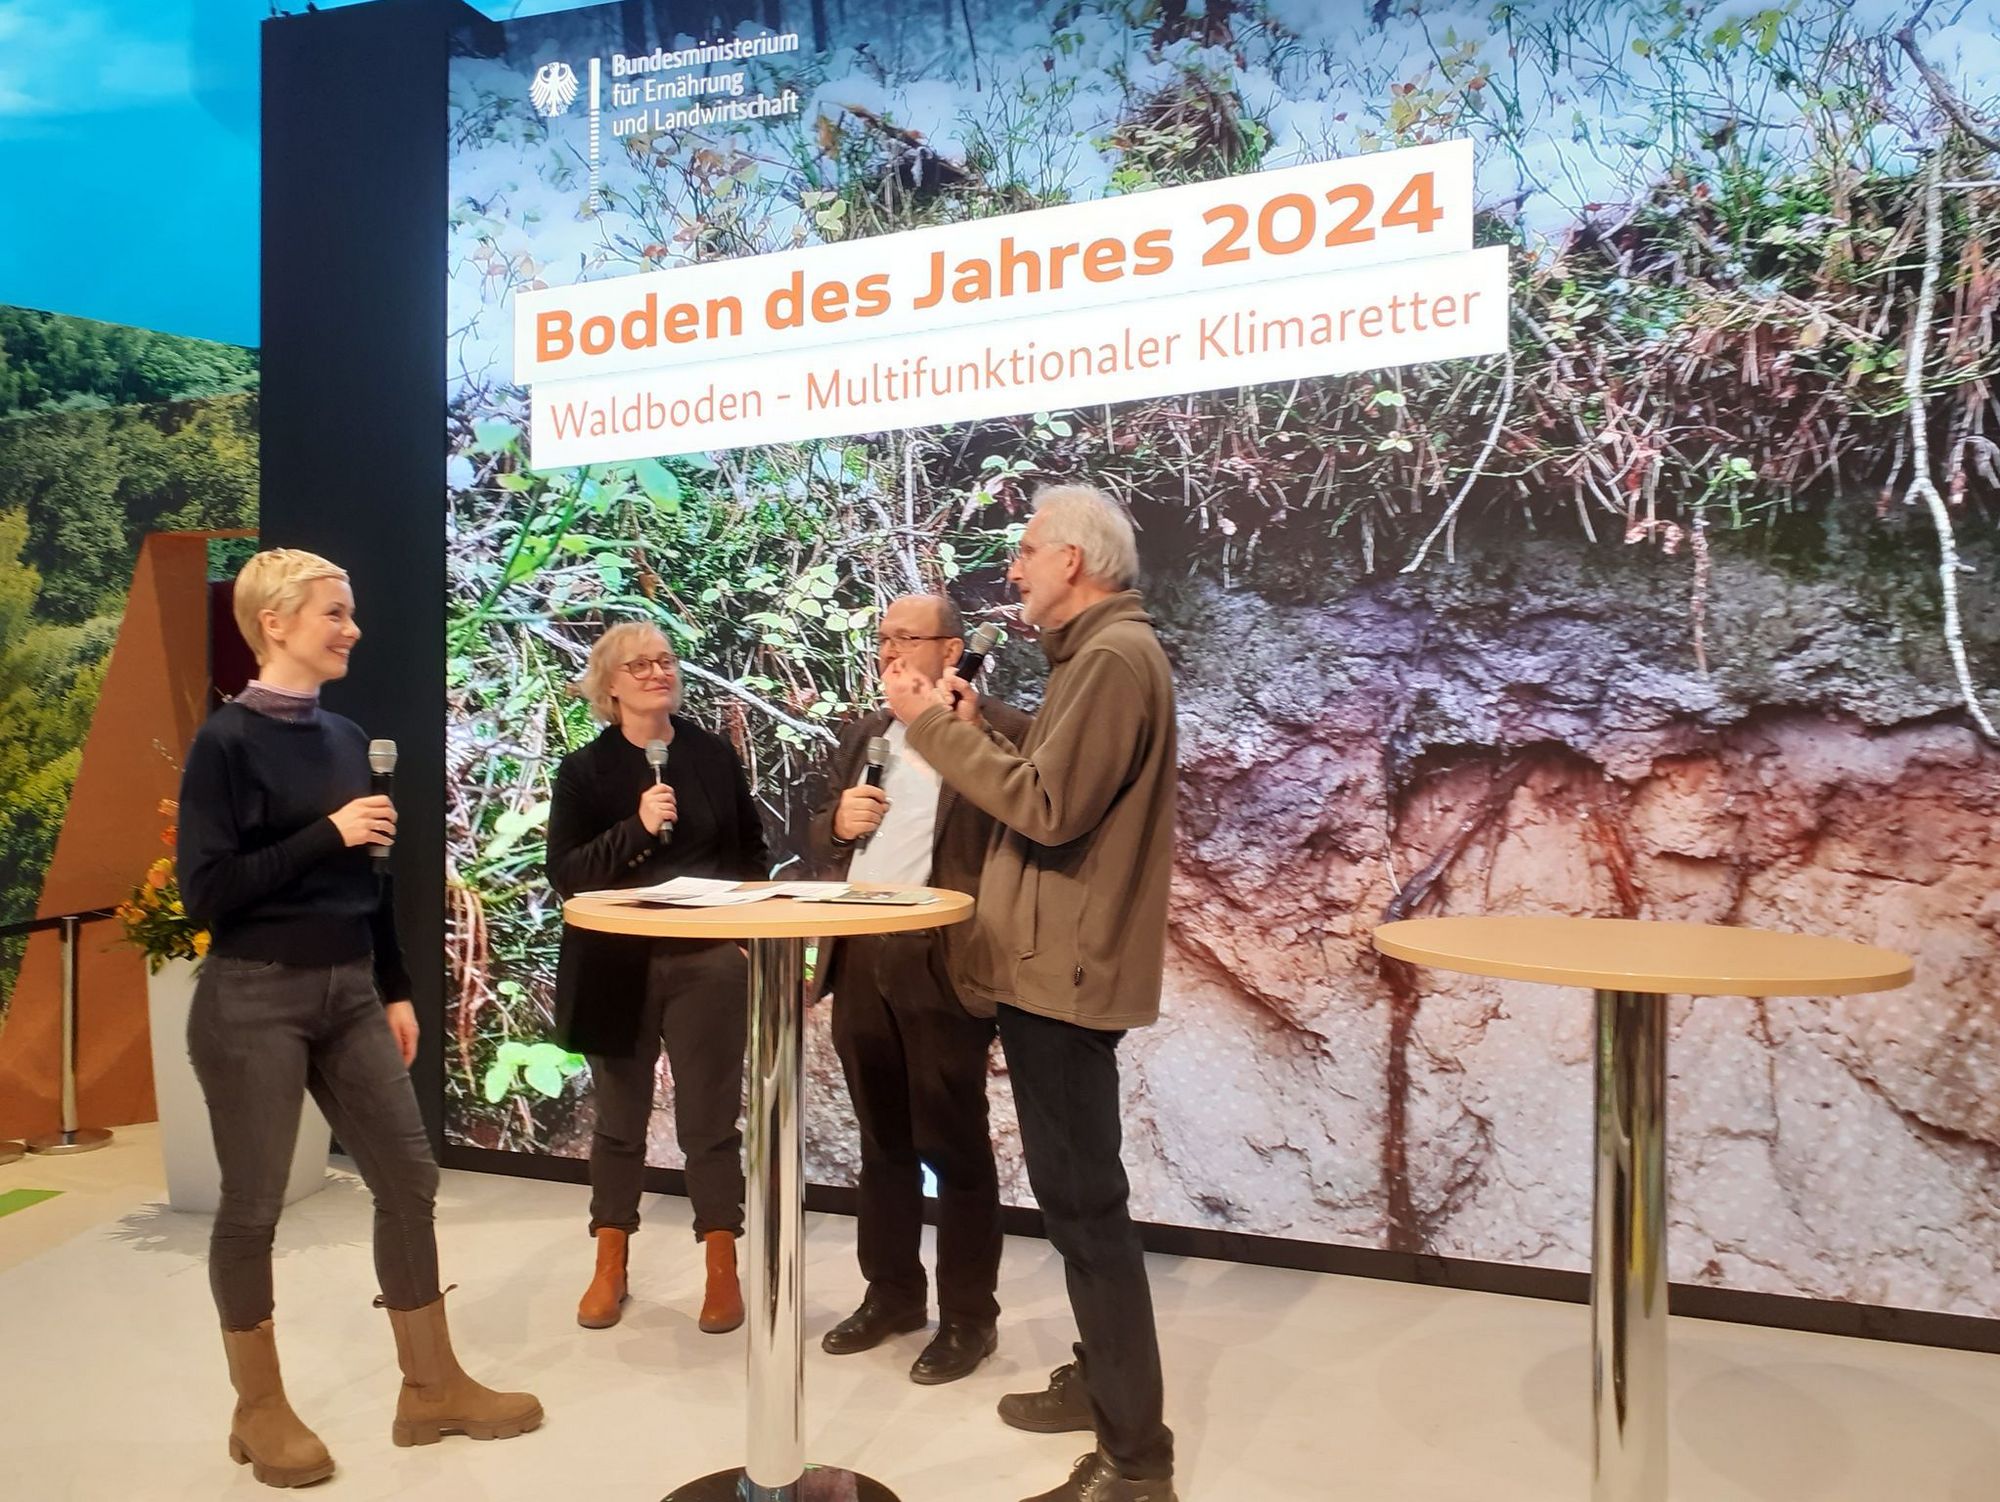 Auf der Bühne in der BMEL-Halle wird der Boden des Jahres 2024, der Waldboden, vorgestellt. Vier Personen im Gespräch.